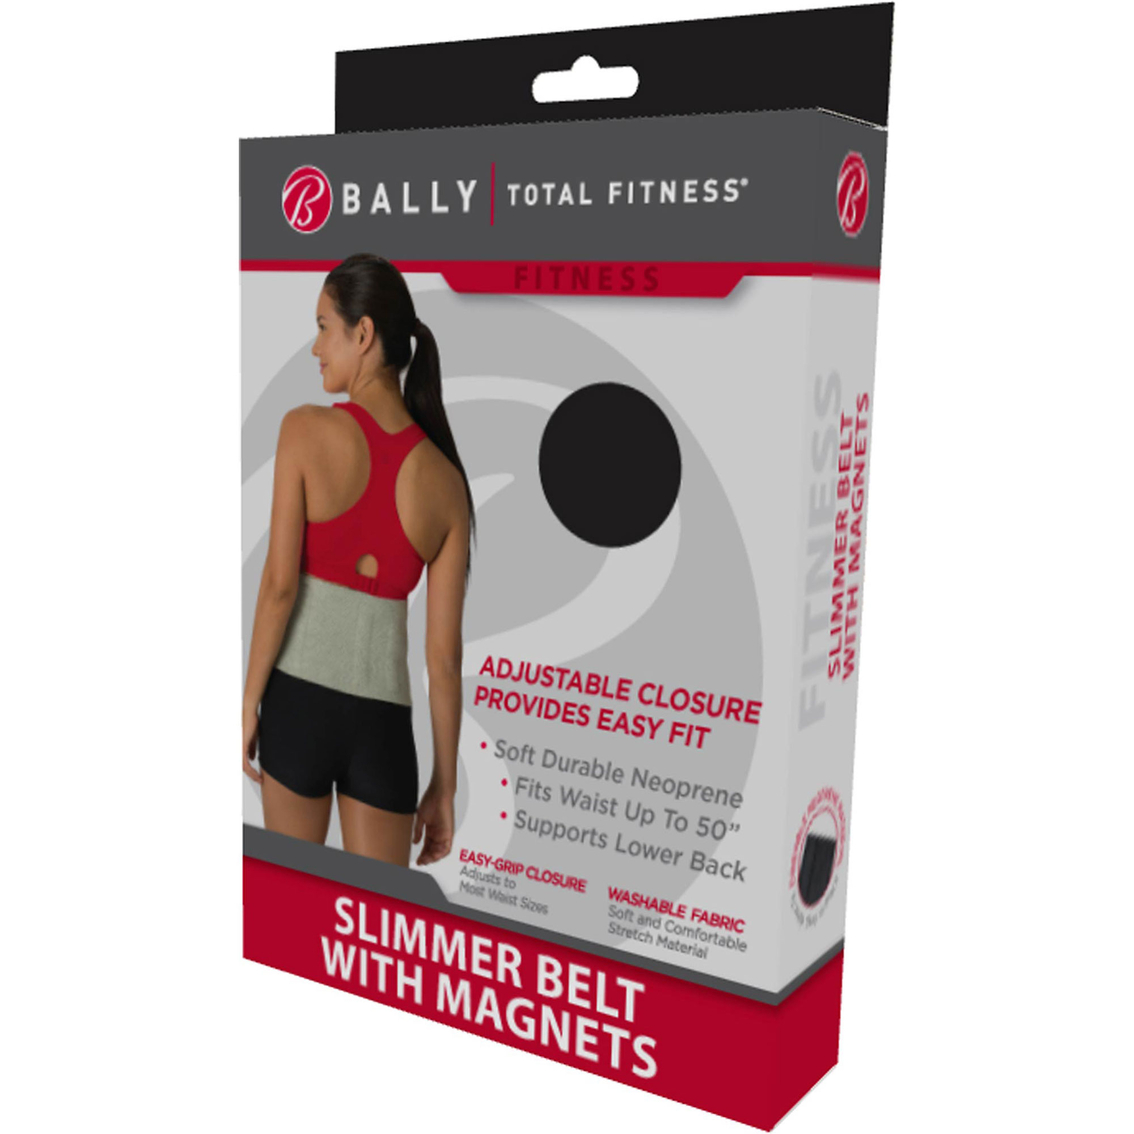 Bally Total Fitness Slimmer Belt - Image 2 of 2